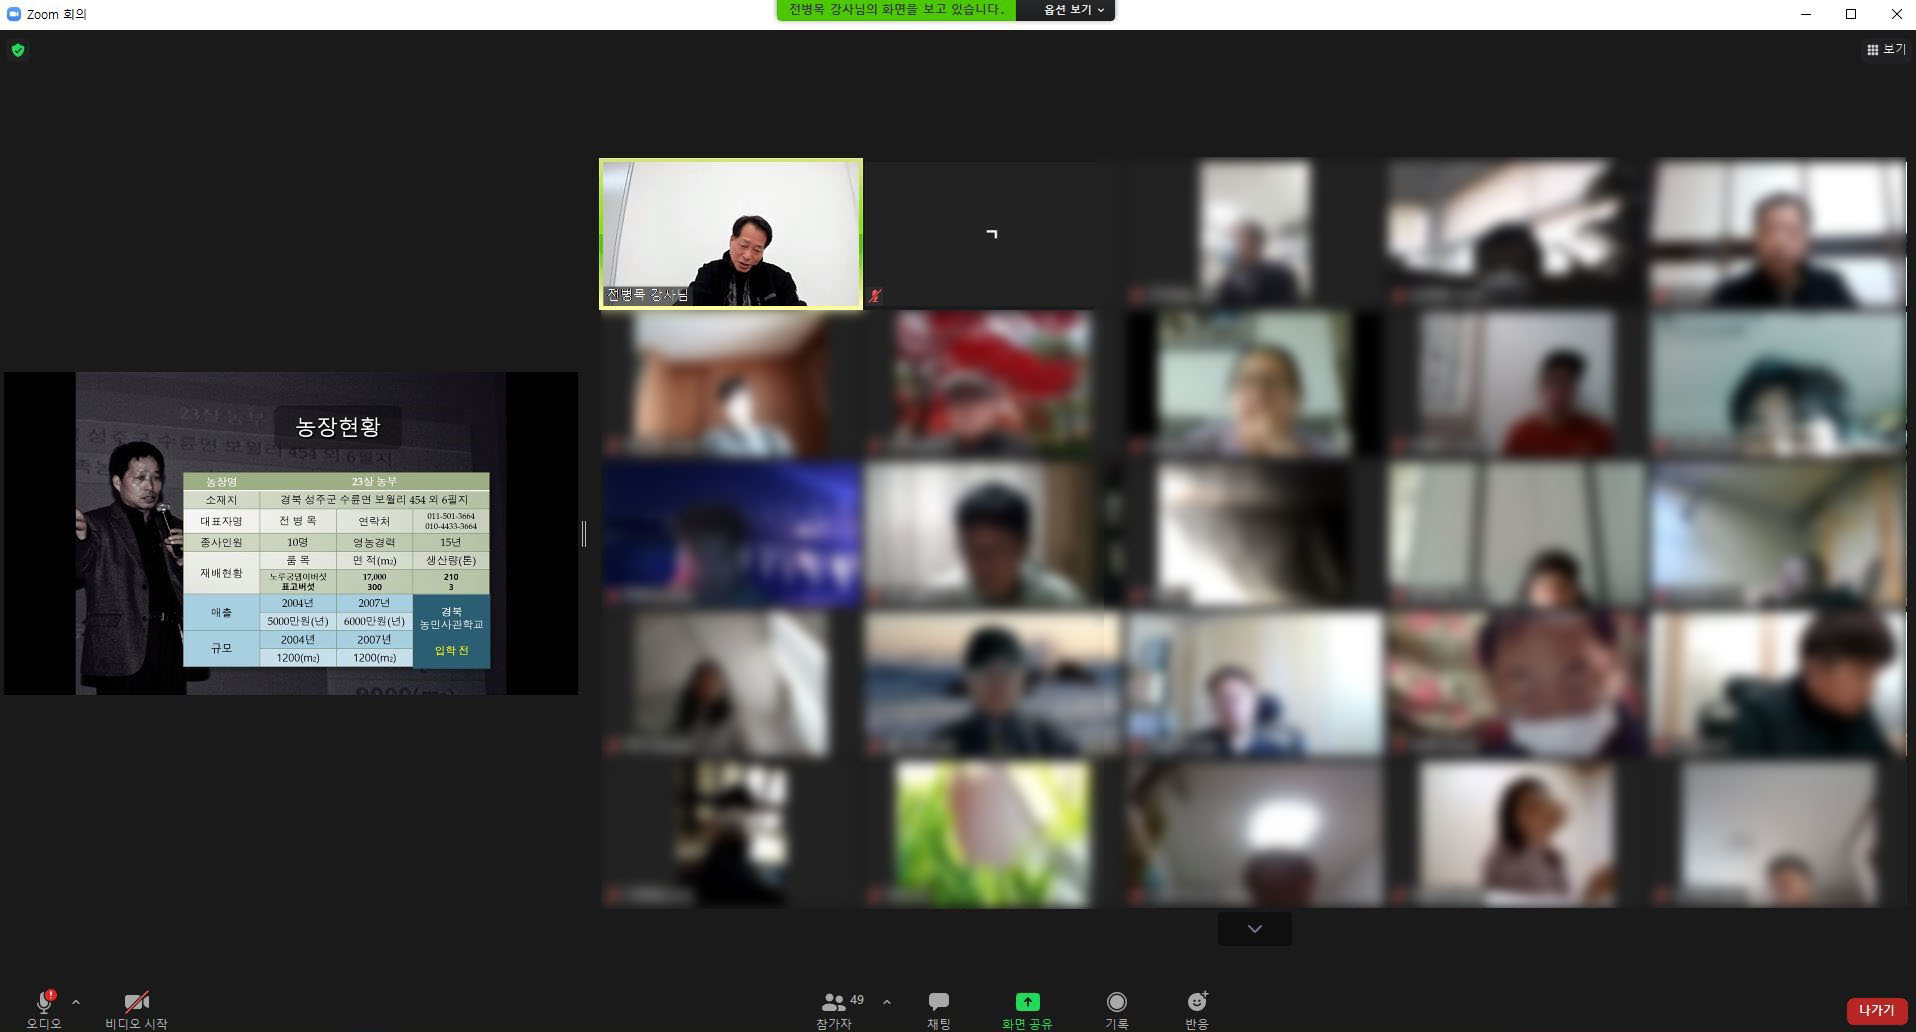 온라인 교육을 듣고 있는 zoom 프로그램 화면의 참가자들 모습 사진